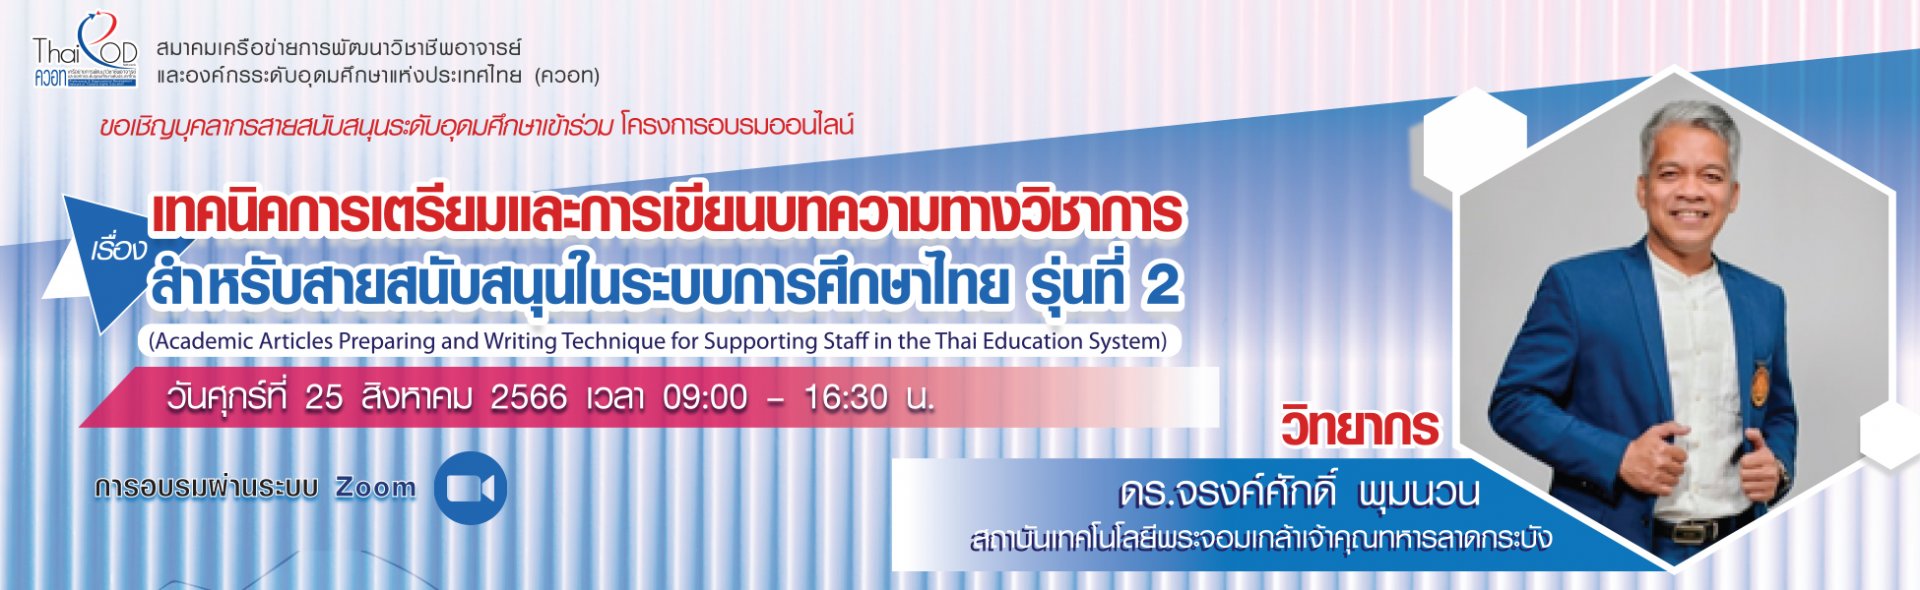 ประชาสัมพันธ์การเข้าร่วมโครงการอบรมออนไลน์ เรื่องเทคนิคการเตรียมและการเขียนบทความทางวิชาการสำหรับสายสนับสนุนในระบบการศึกษาไทย รุ่นที่ 2 